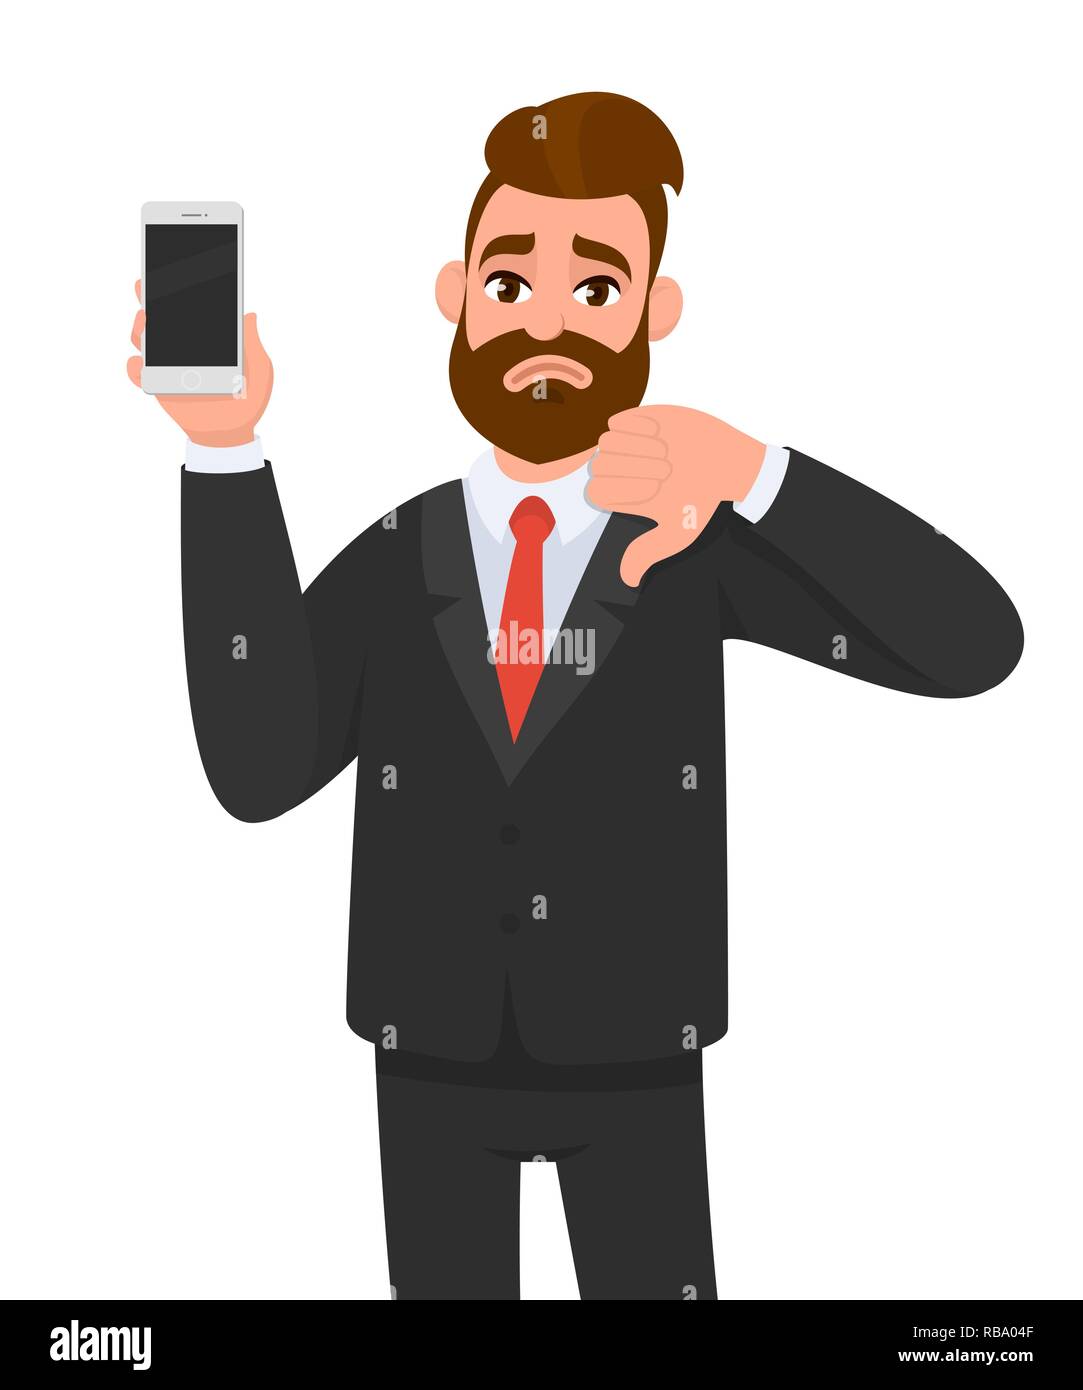 Homme d'affaires malheureux tenant/montrant un nouveau smartphone, mobile, téléphone portable en main et signe de pouce vers le bas de gestuelle. Émotion humaine et langage corporel Illustration de Vecteur